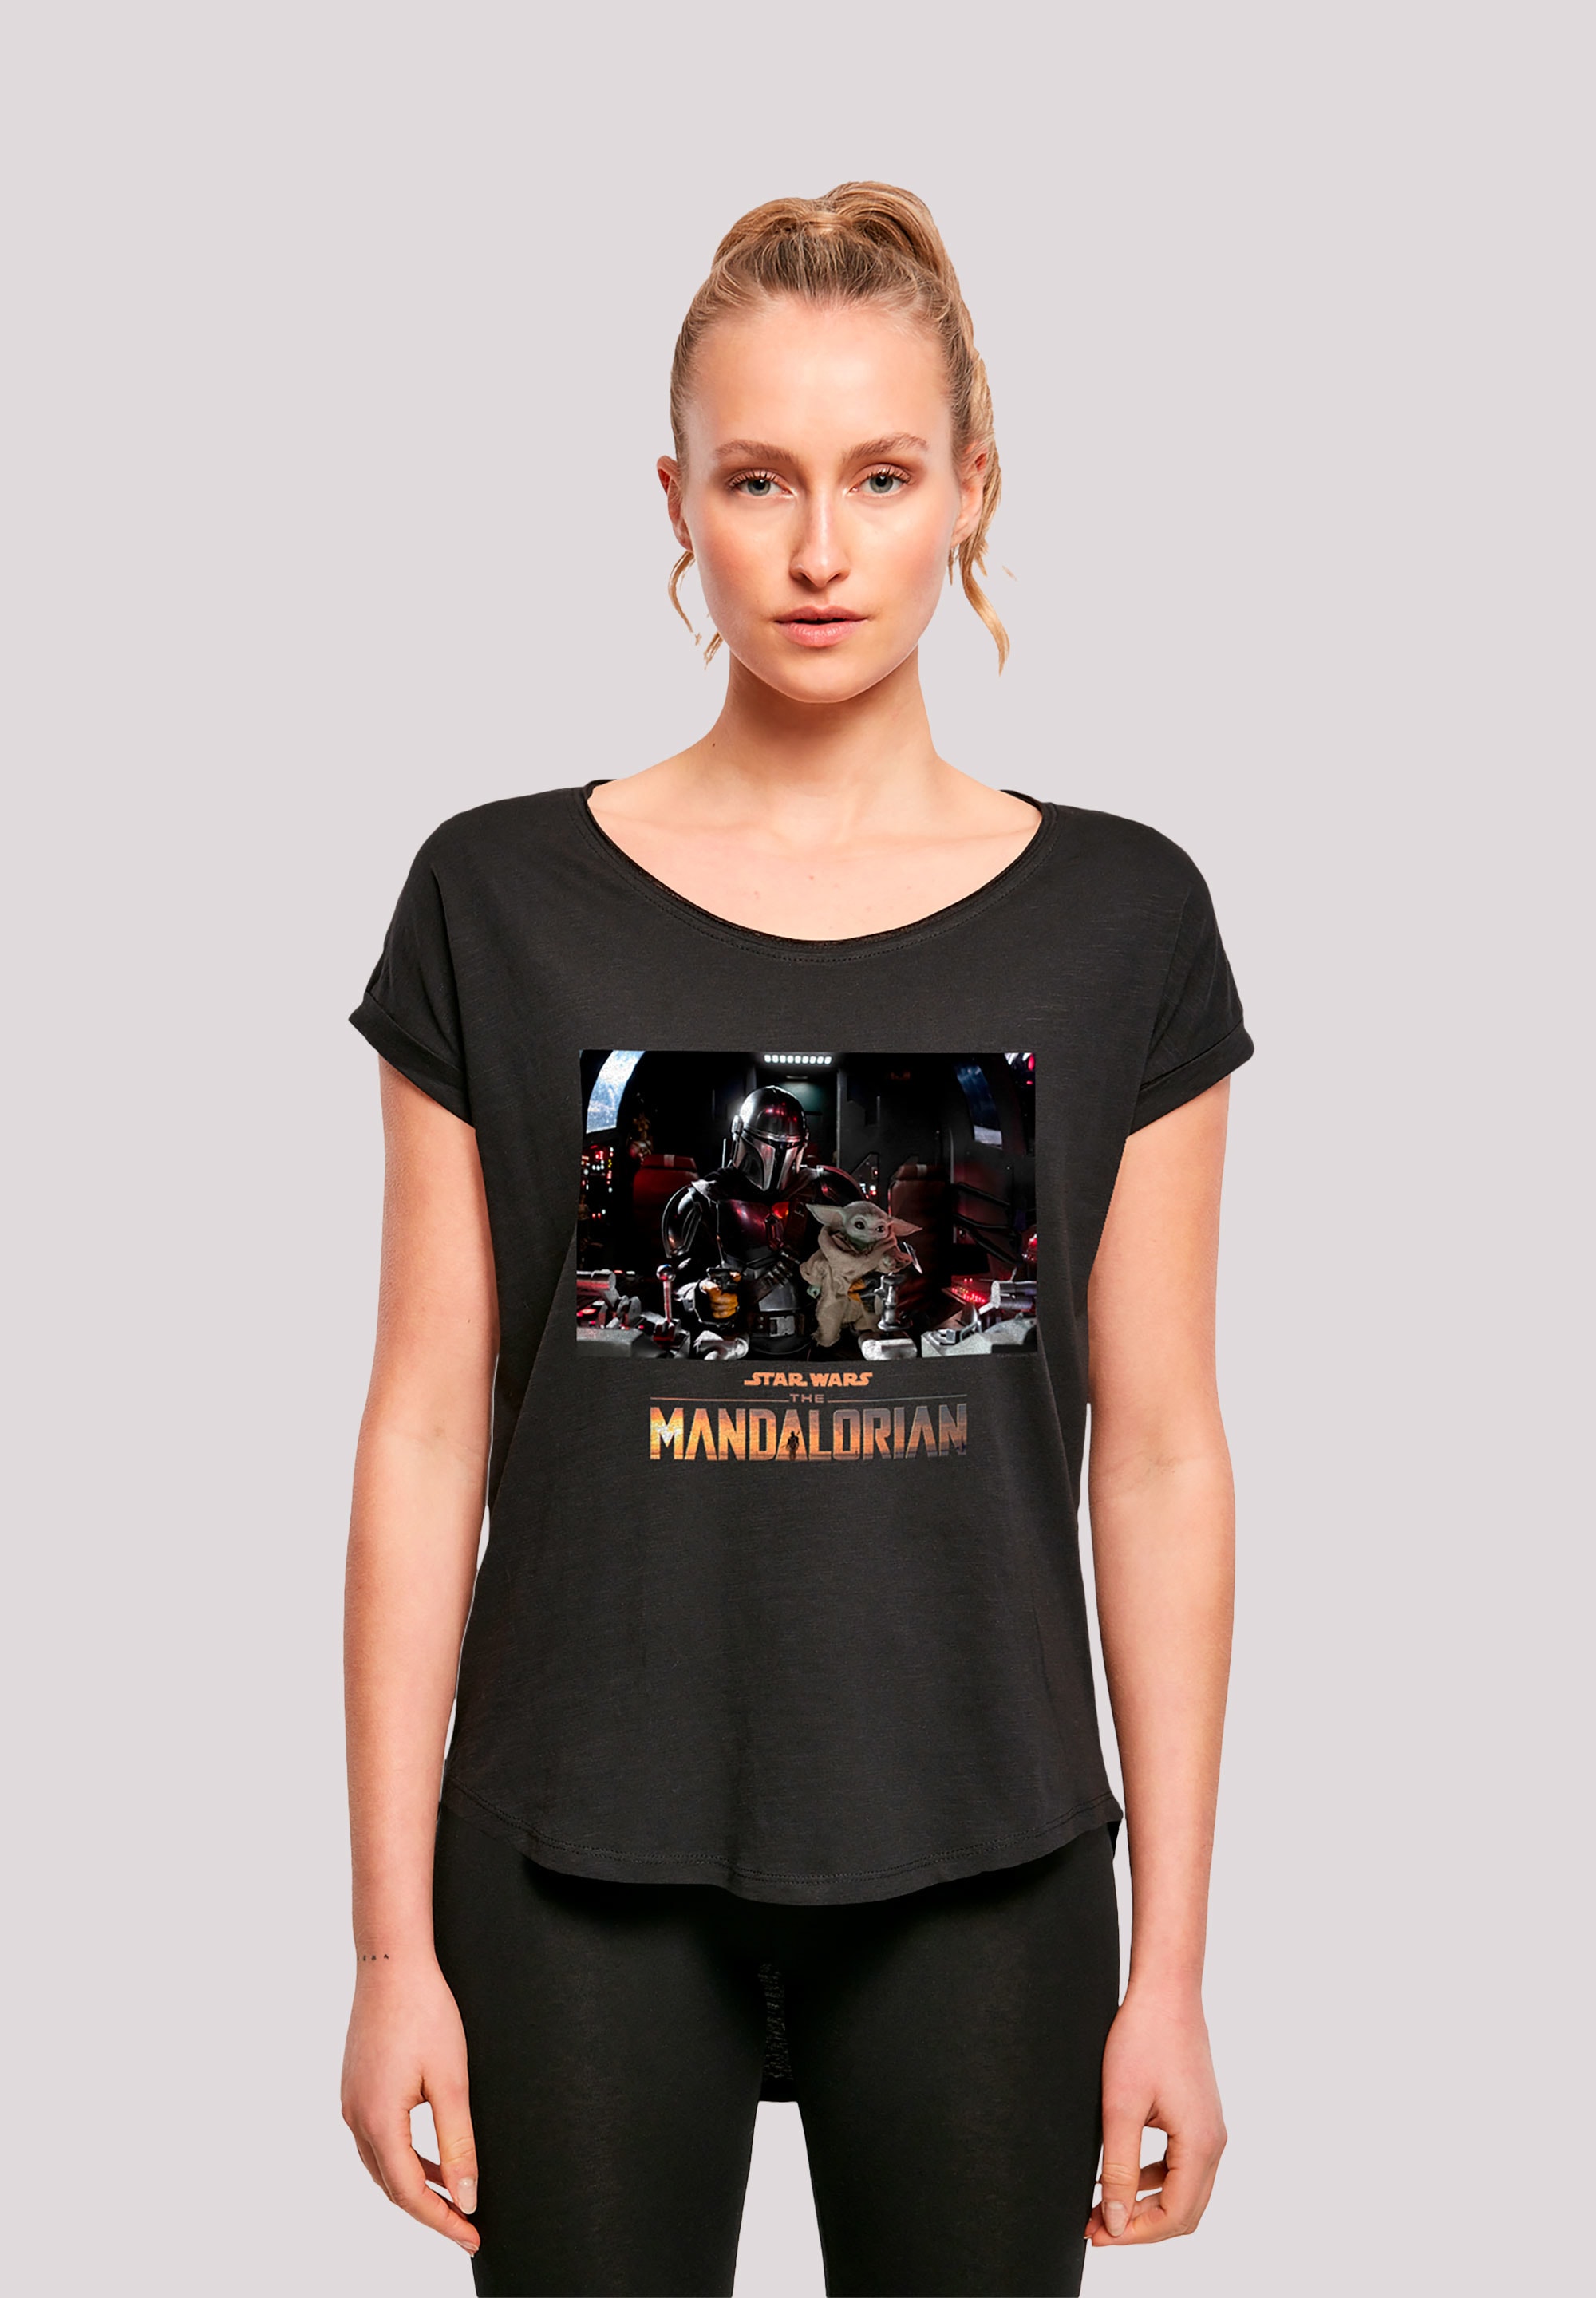 Premium The Sterne«, Krieg T-Shirt für Mandalorian kaufen »Star - Print BAUR F4NT4STIC | Wars der